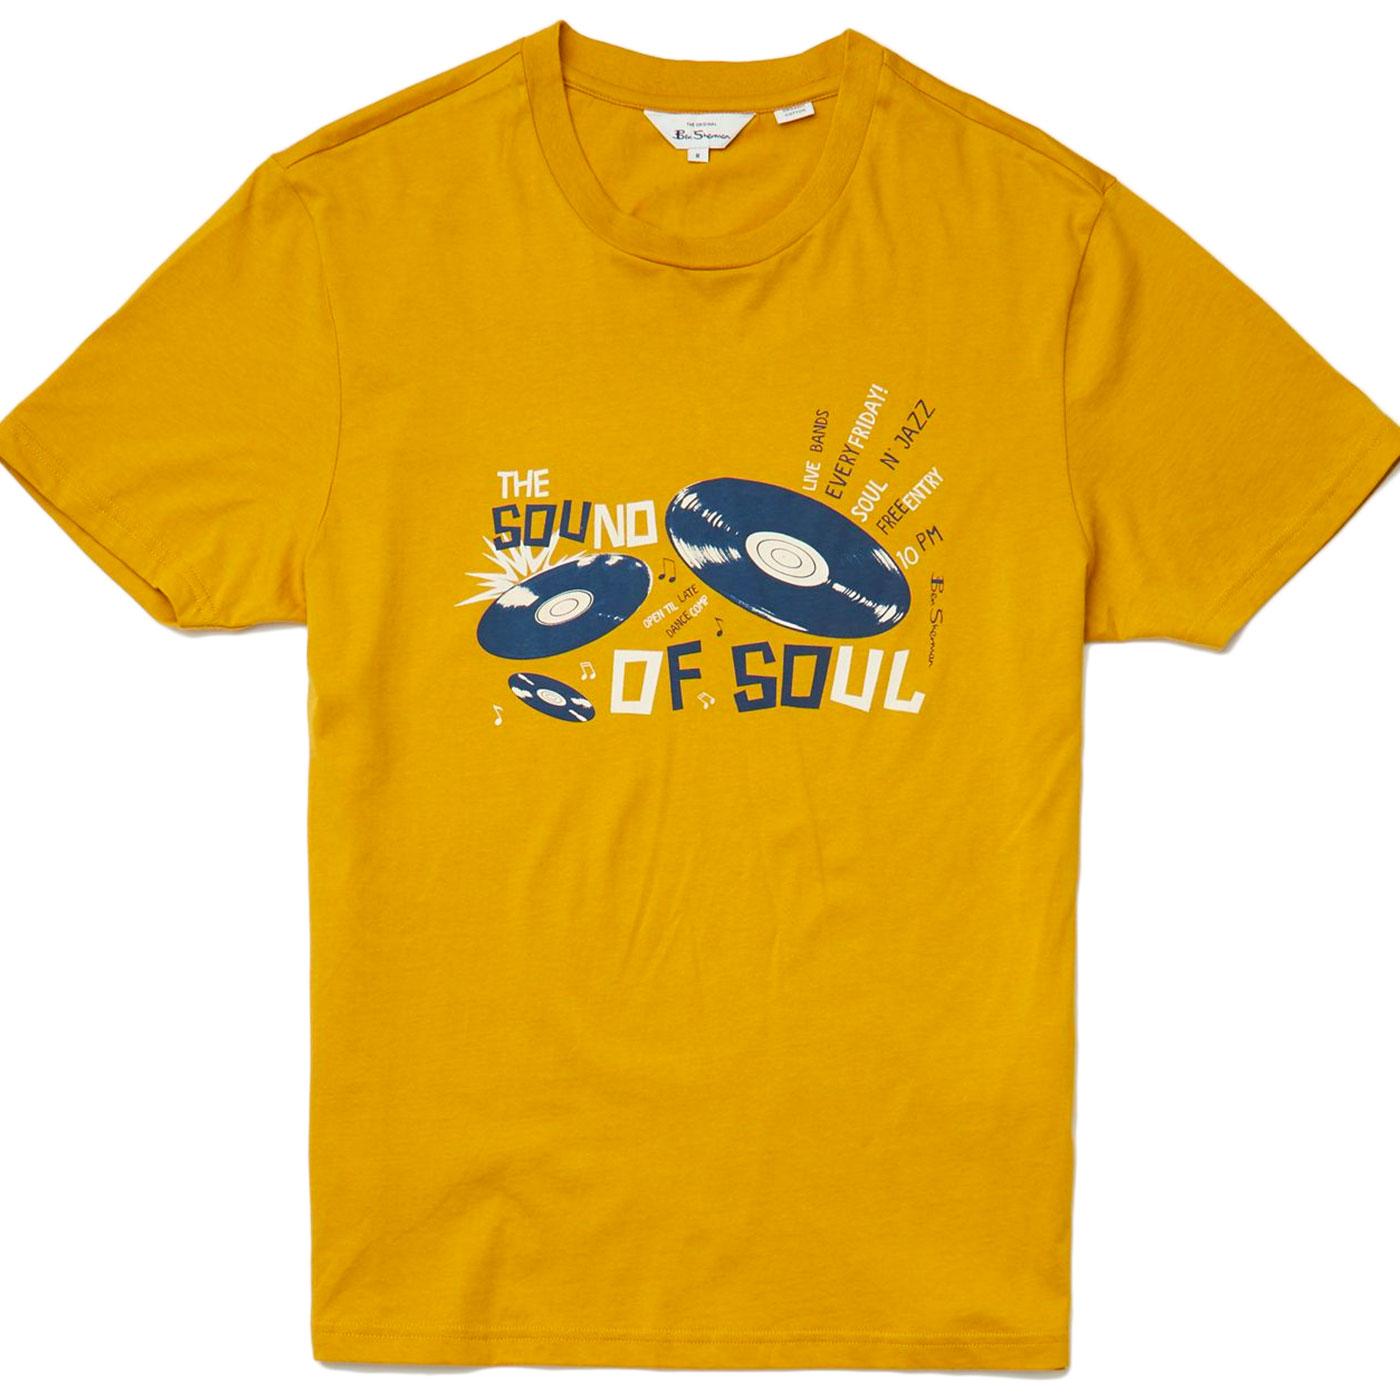 BEN SHERMAN Retro Mod Sound of Soul T-Shirt M